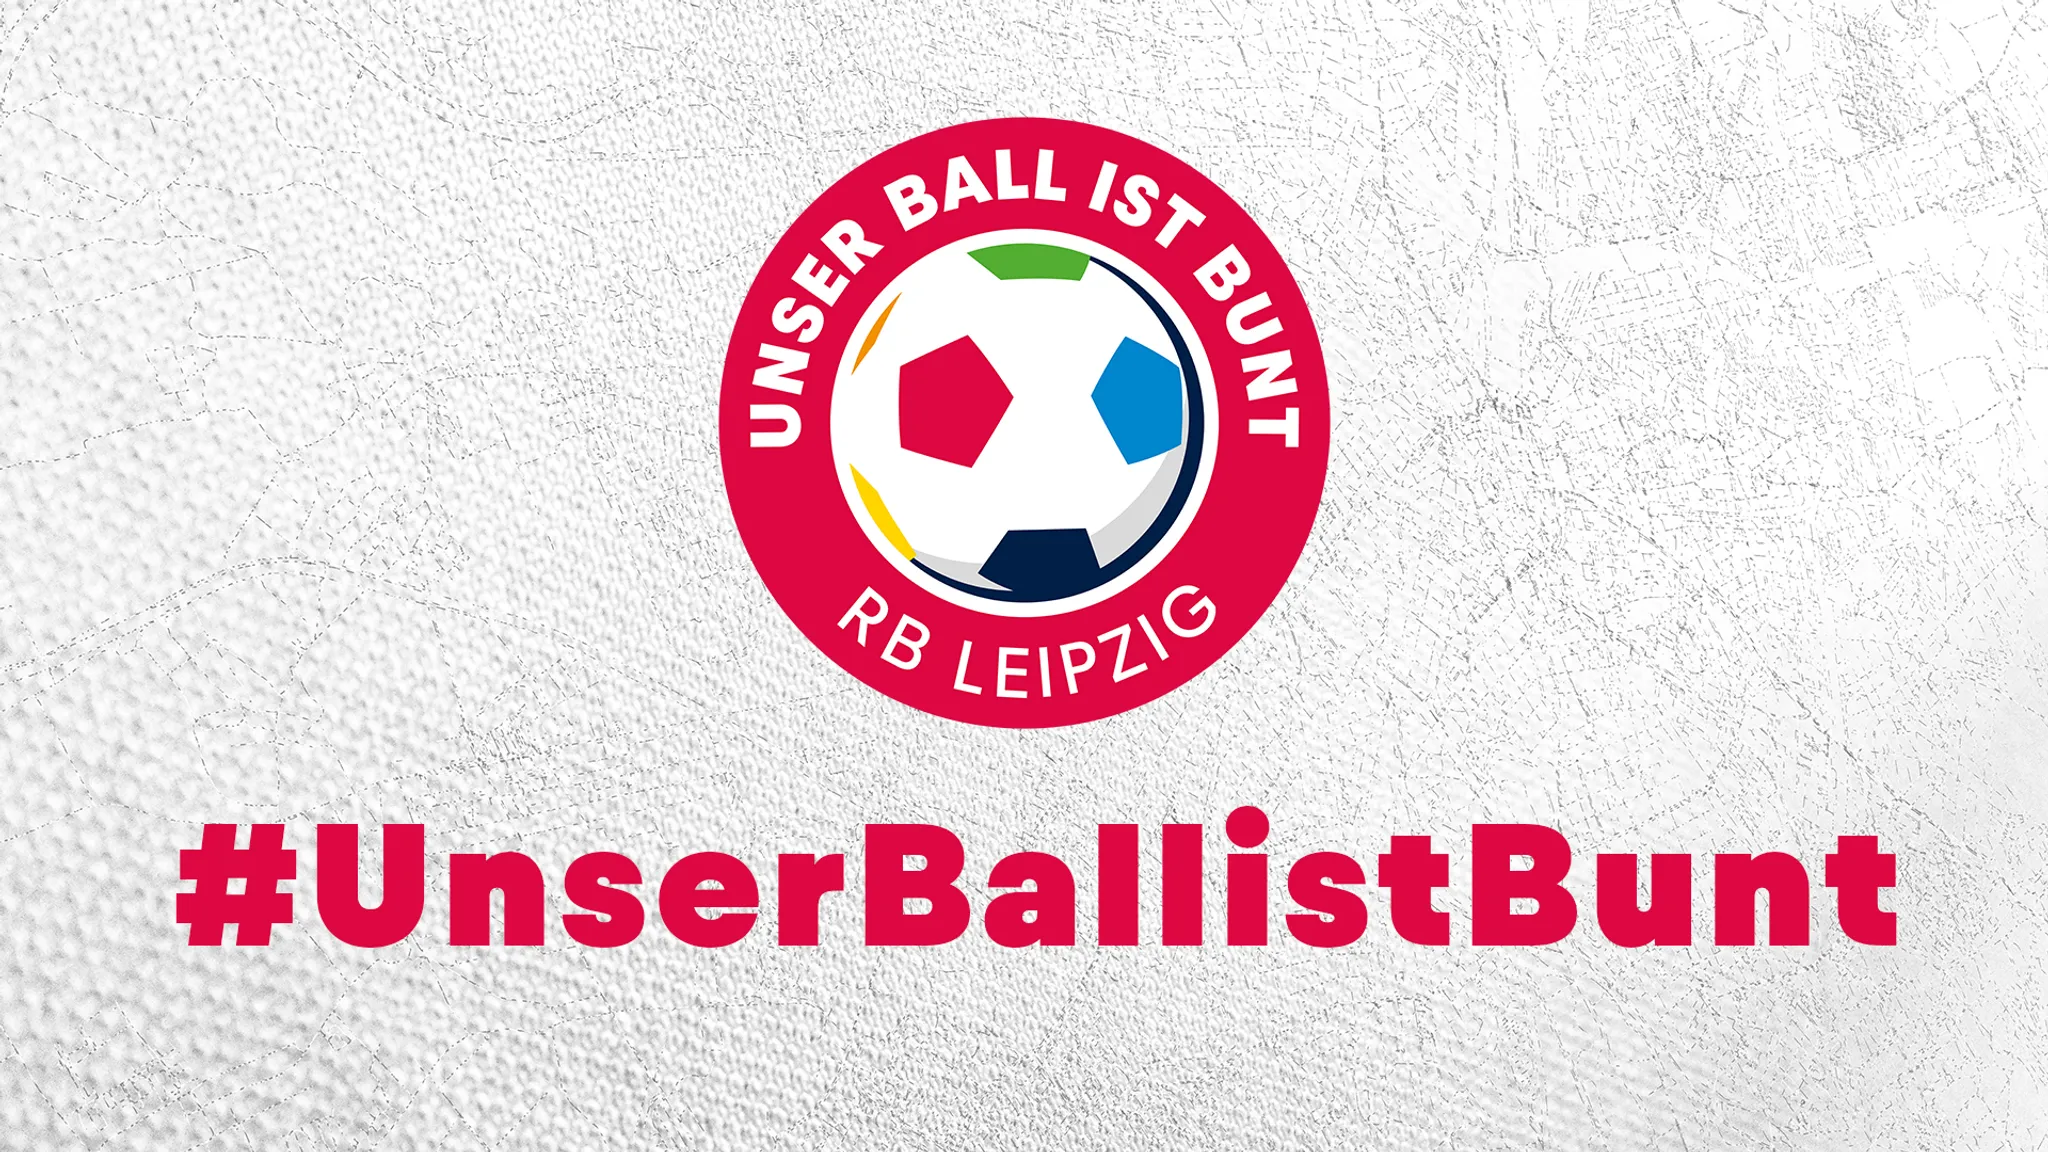 Unser Ball ist bunt: RB Leipzig setzt ein klares Zeichen gegen Rassismus!